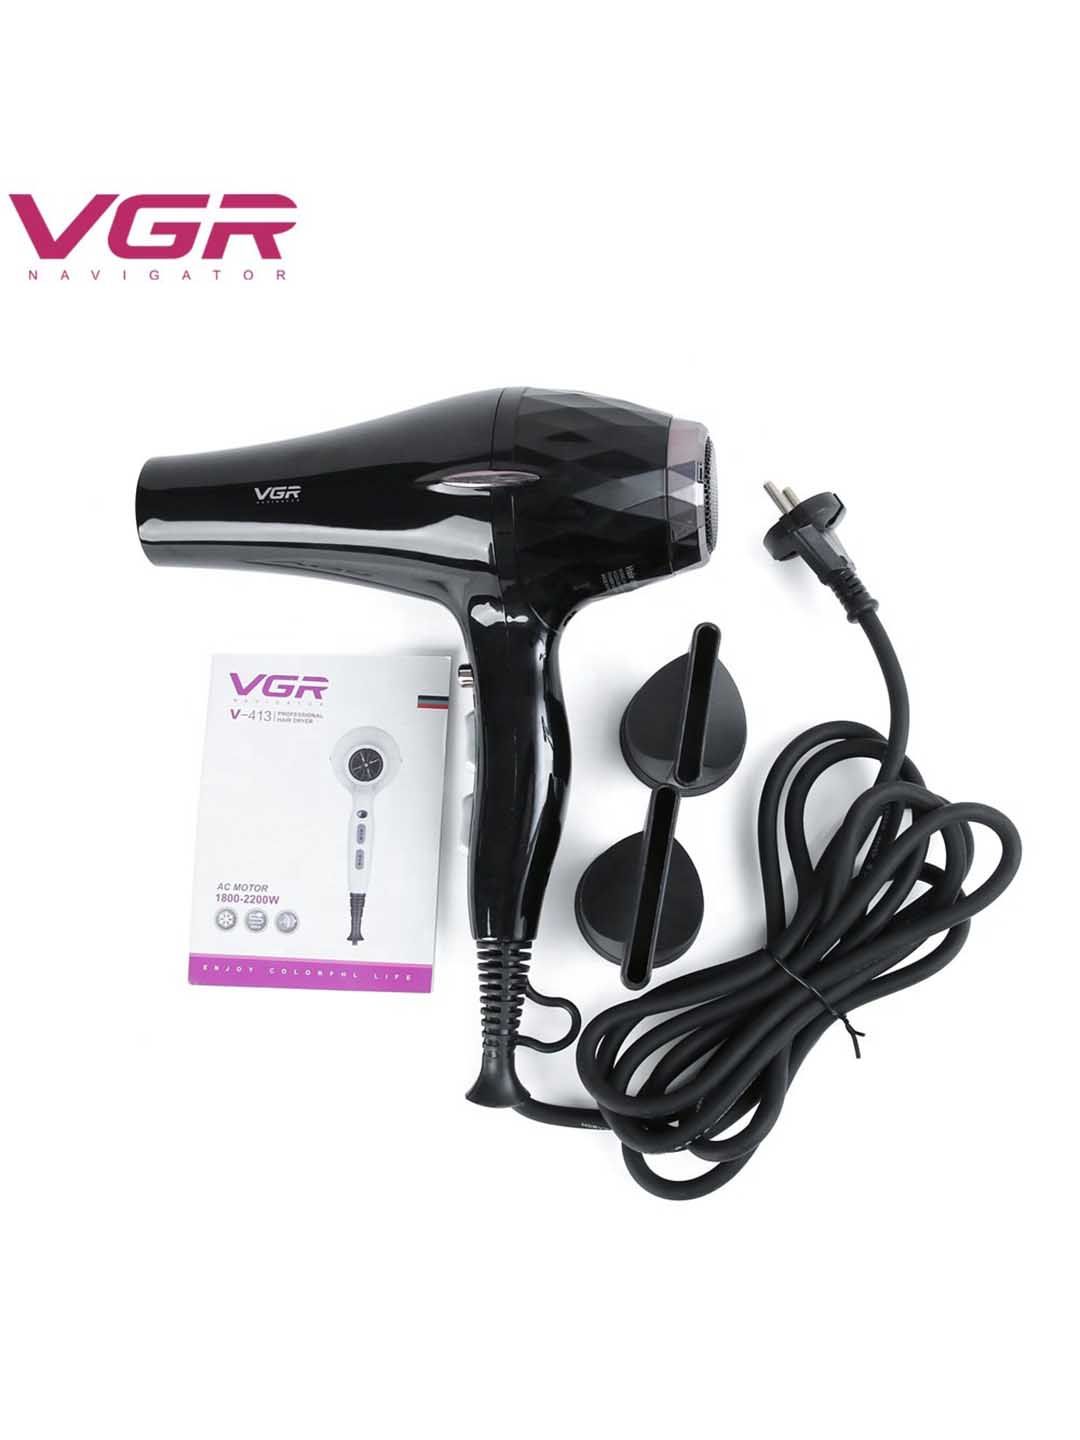 VGR V-413 Professional Hair Dryer 1800-2200W Price in India